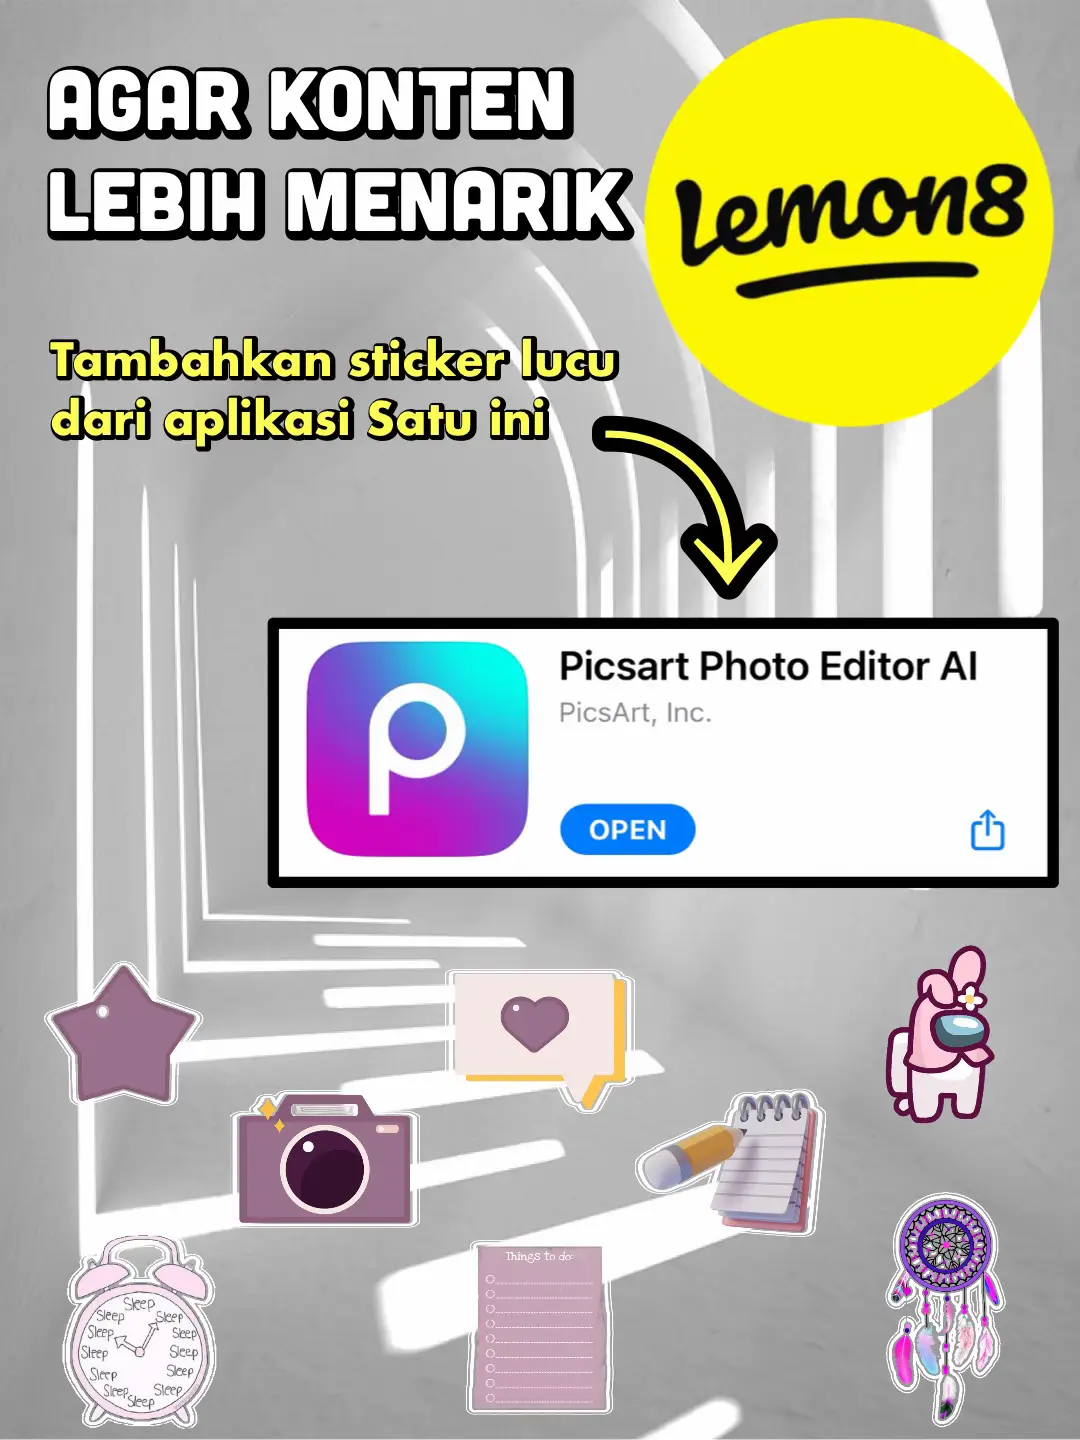 Gambar Sticker cute untuk konten Lemon8 (0)